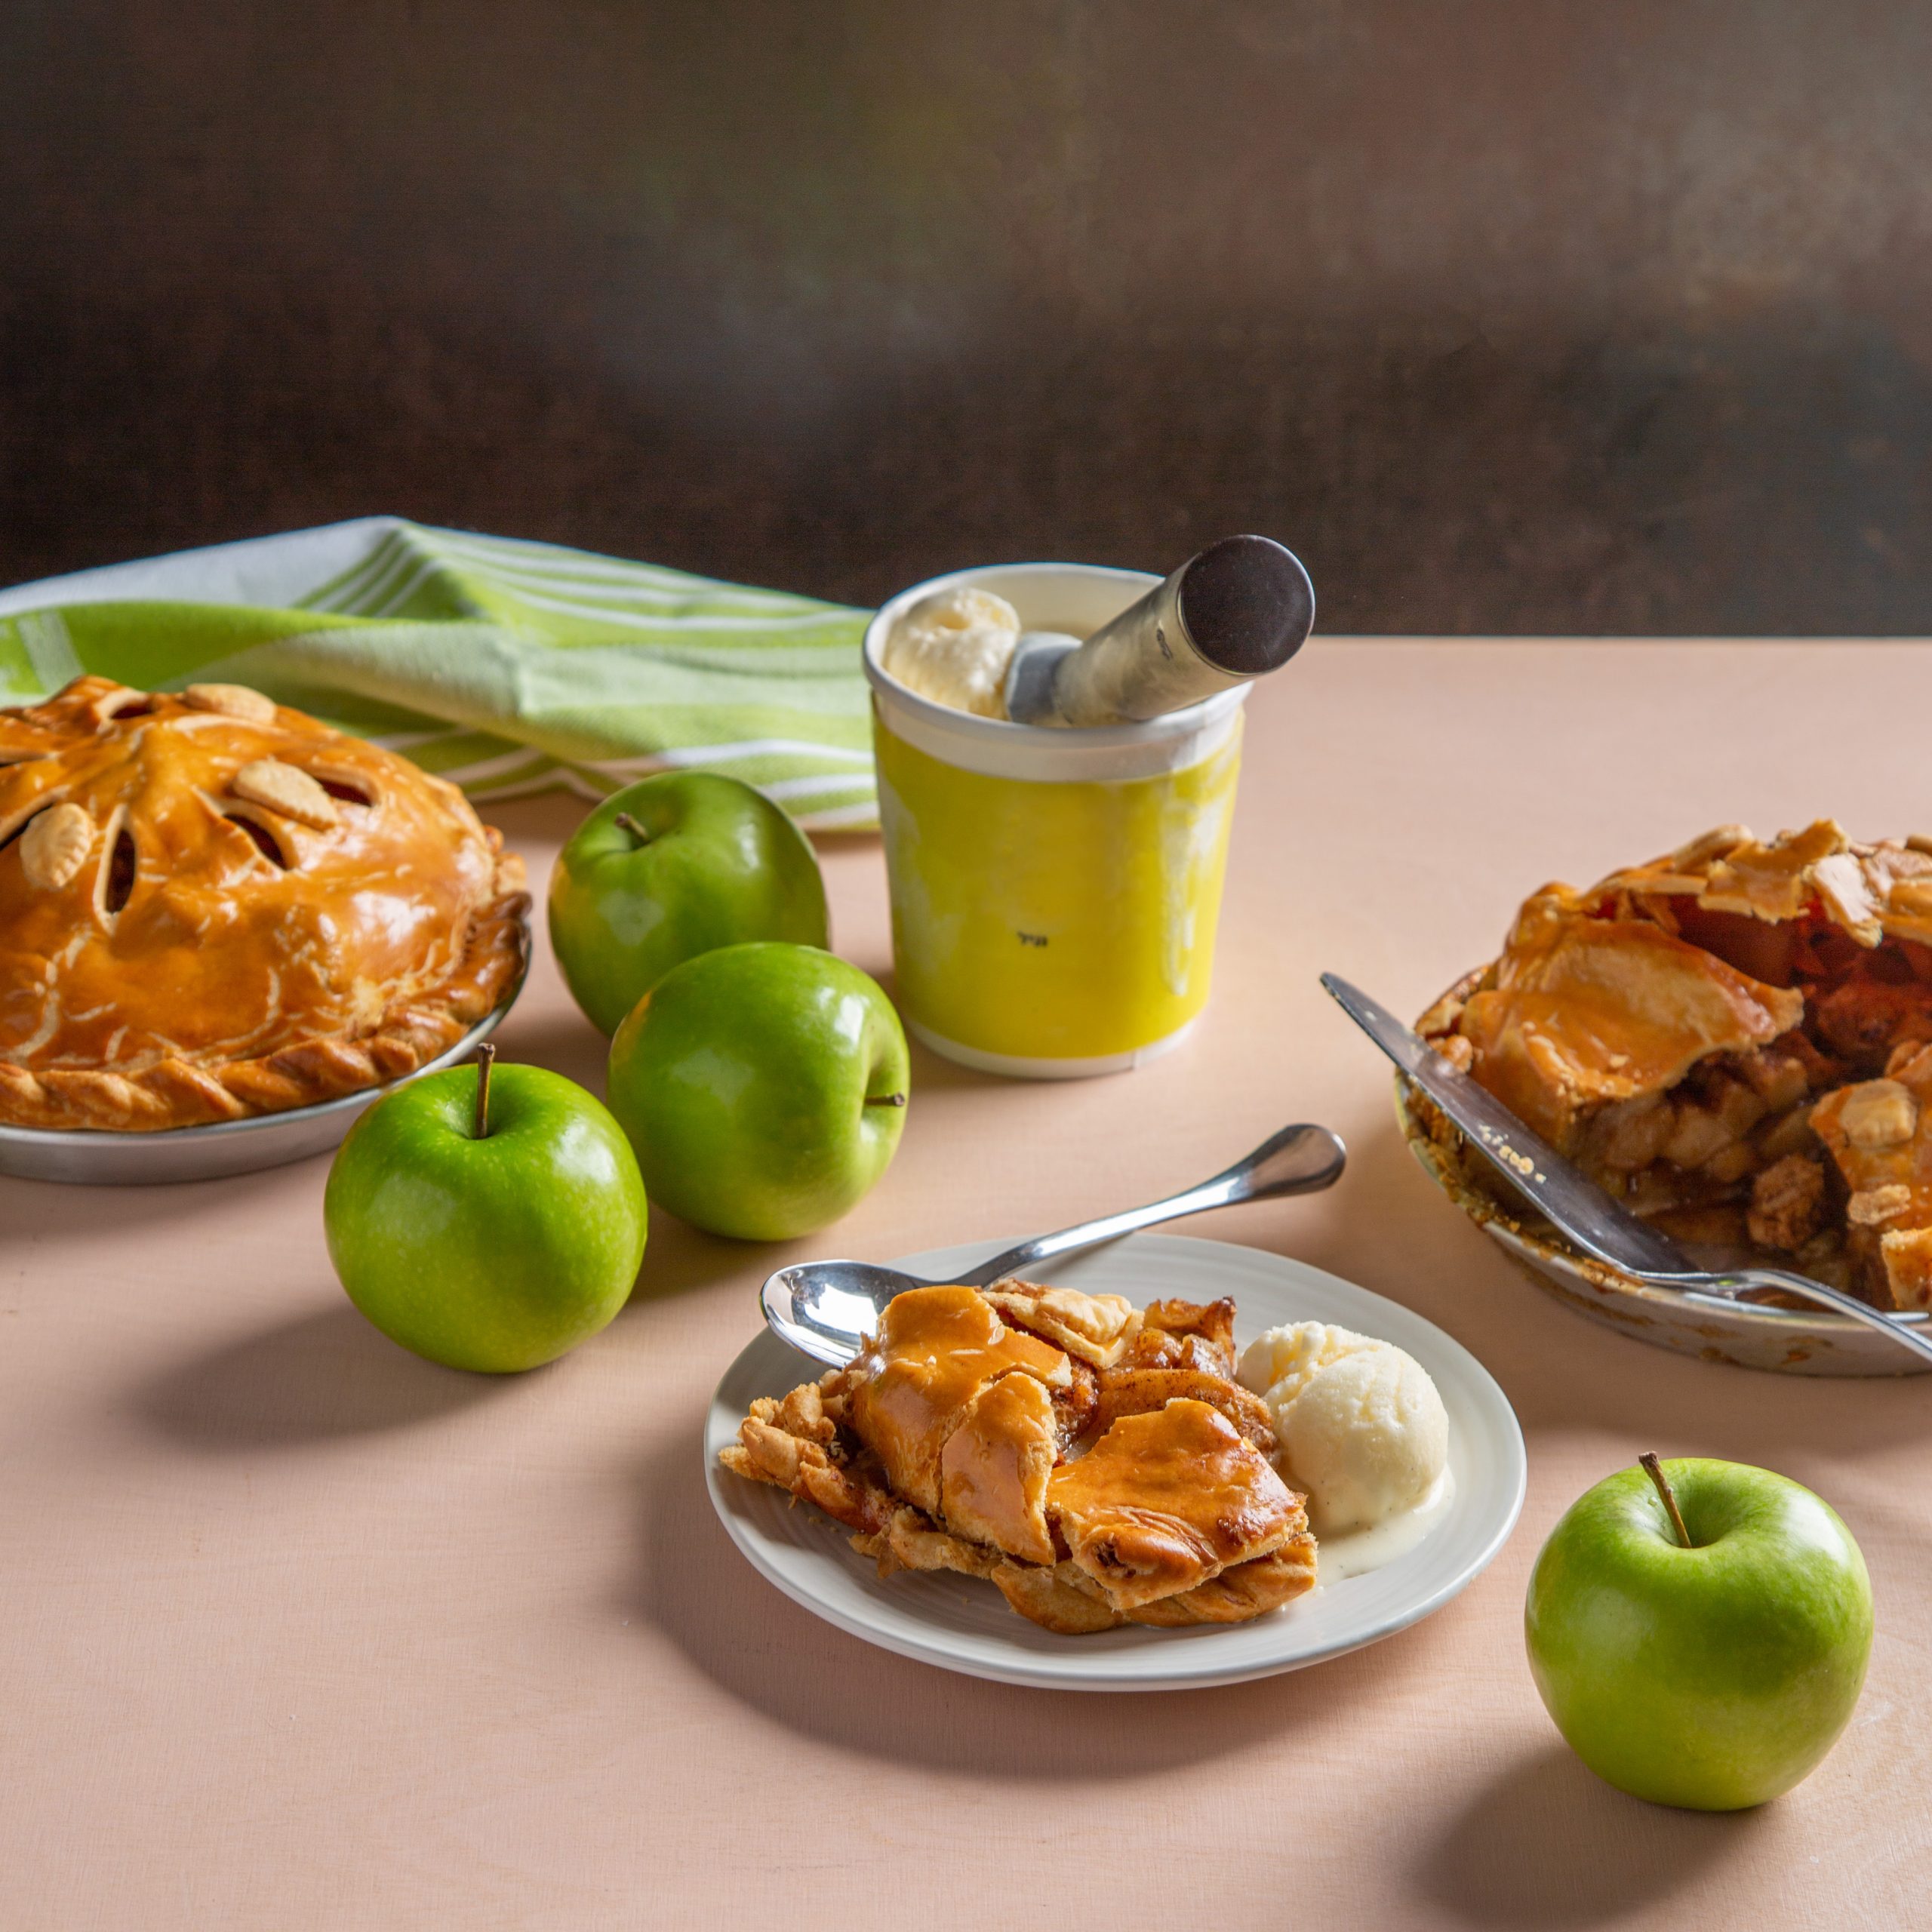 Мясной штрудель, черная икра и традиционный яблочный пирог к вашему праздничному столу